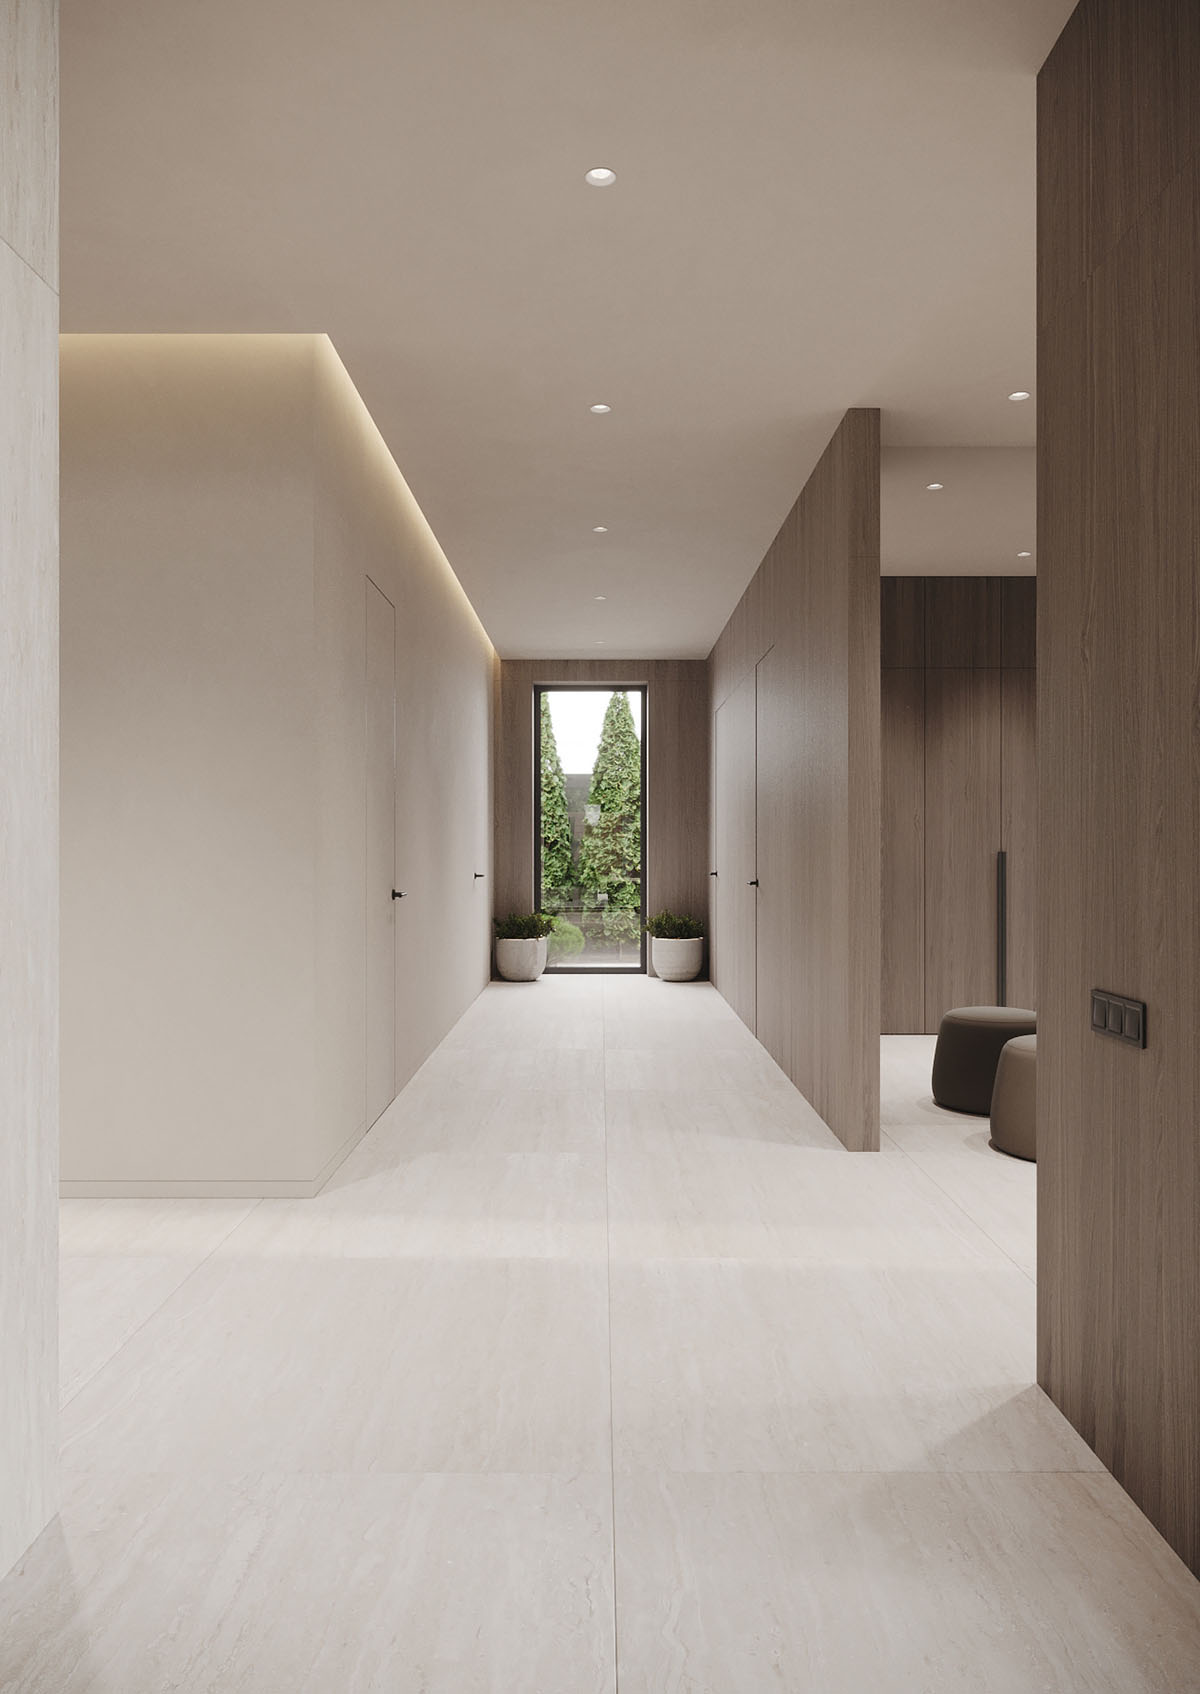 石灰华地板+木纹饰面！250平米豪华家居设计